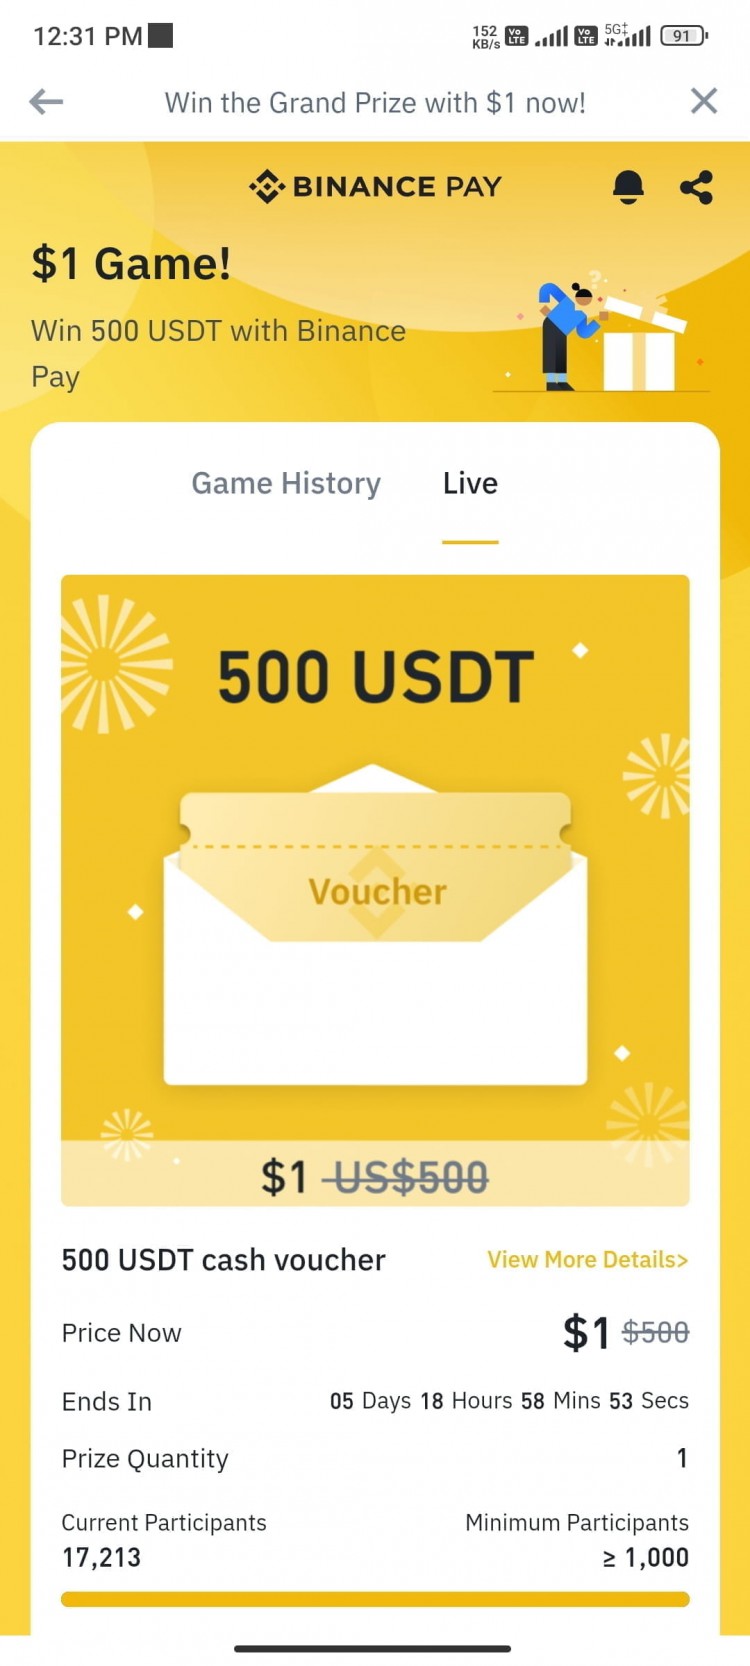 參加幣安$1遊戲，贏得$500 USDT獎勵 立即行動，抓住這個有限的機會